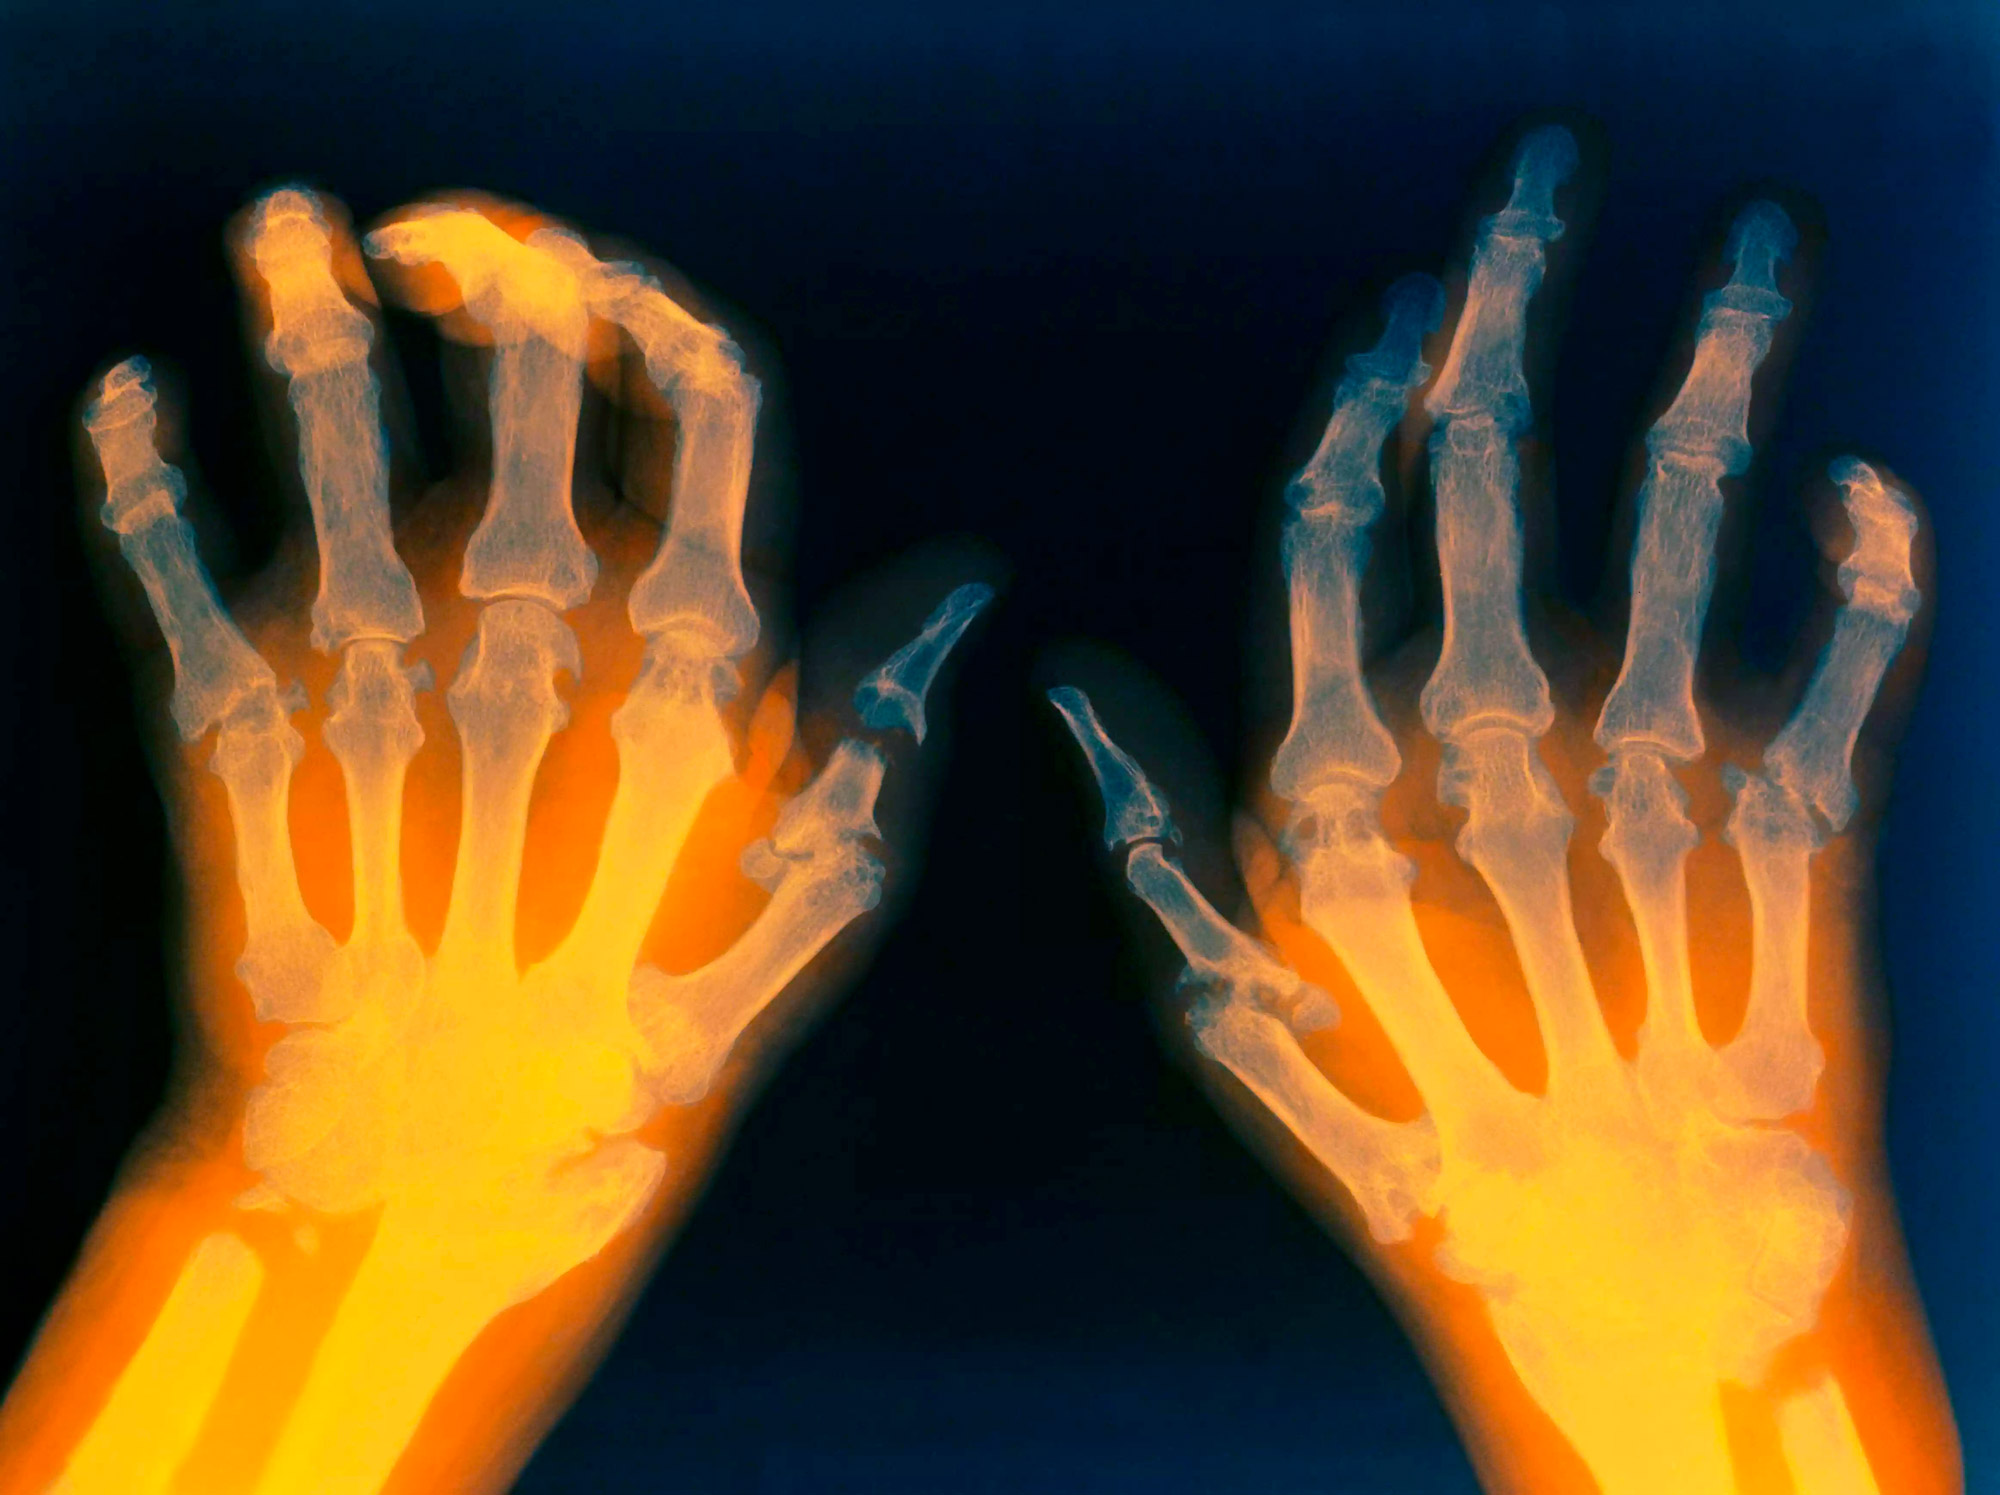 Ревматоидный артрит на руках фото